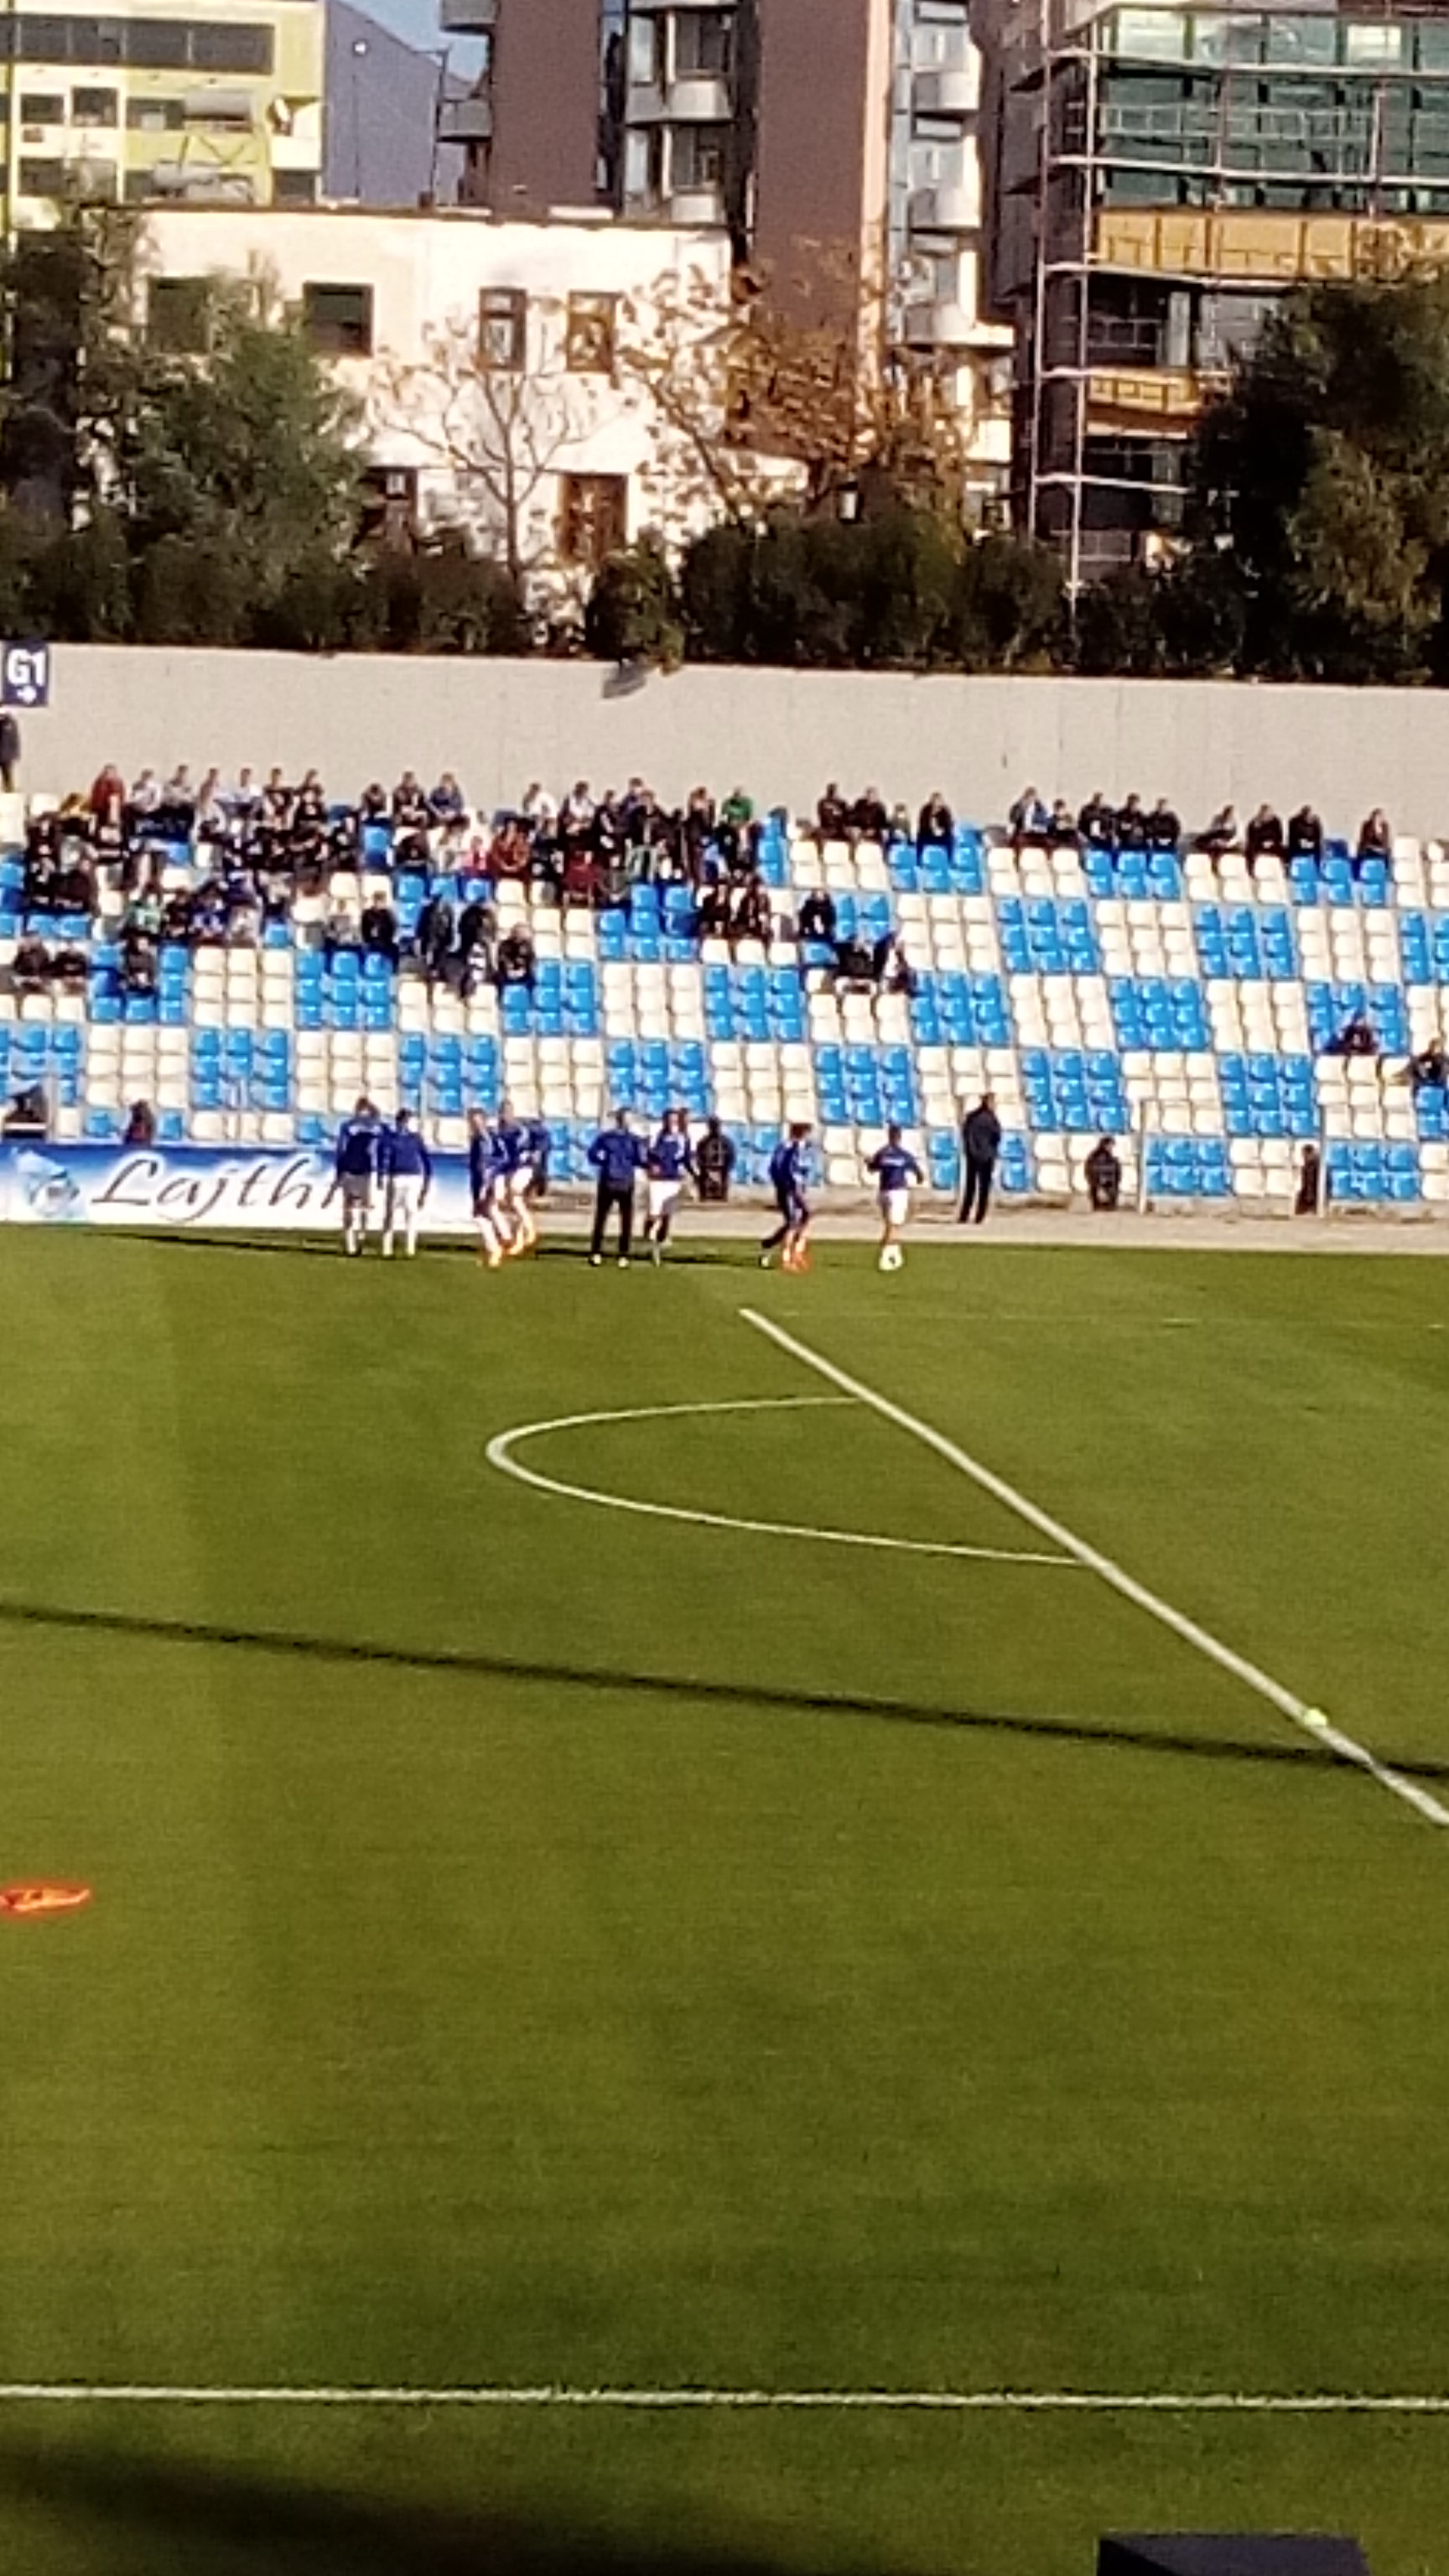 KF.Tirana Stadium